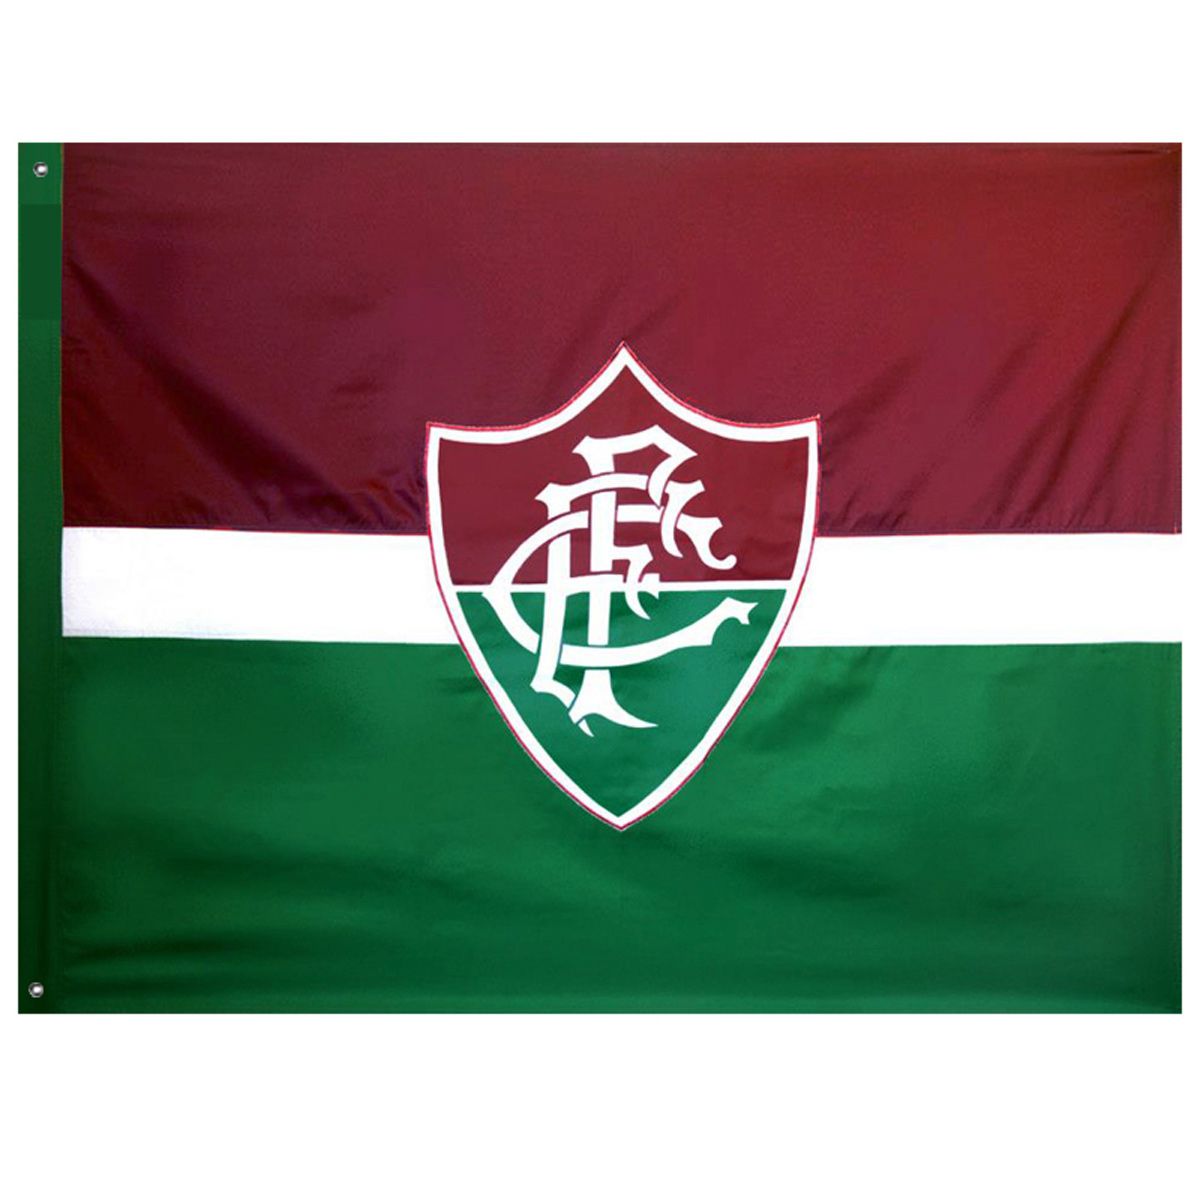 Bandeira Oficial do Fluminense 96 x 68 cm - 1 1/2 pano